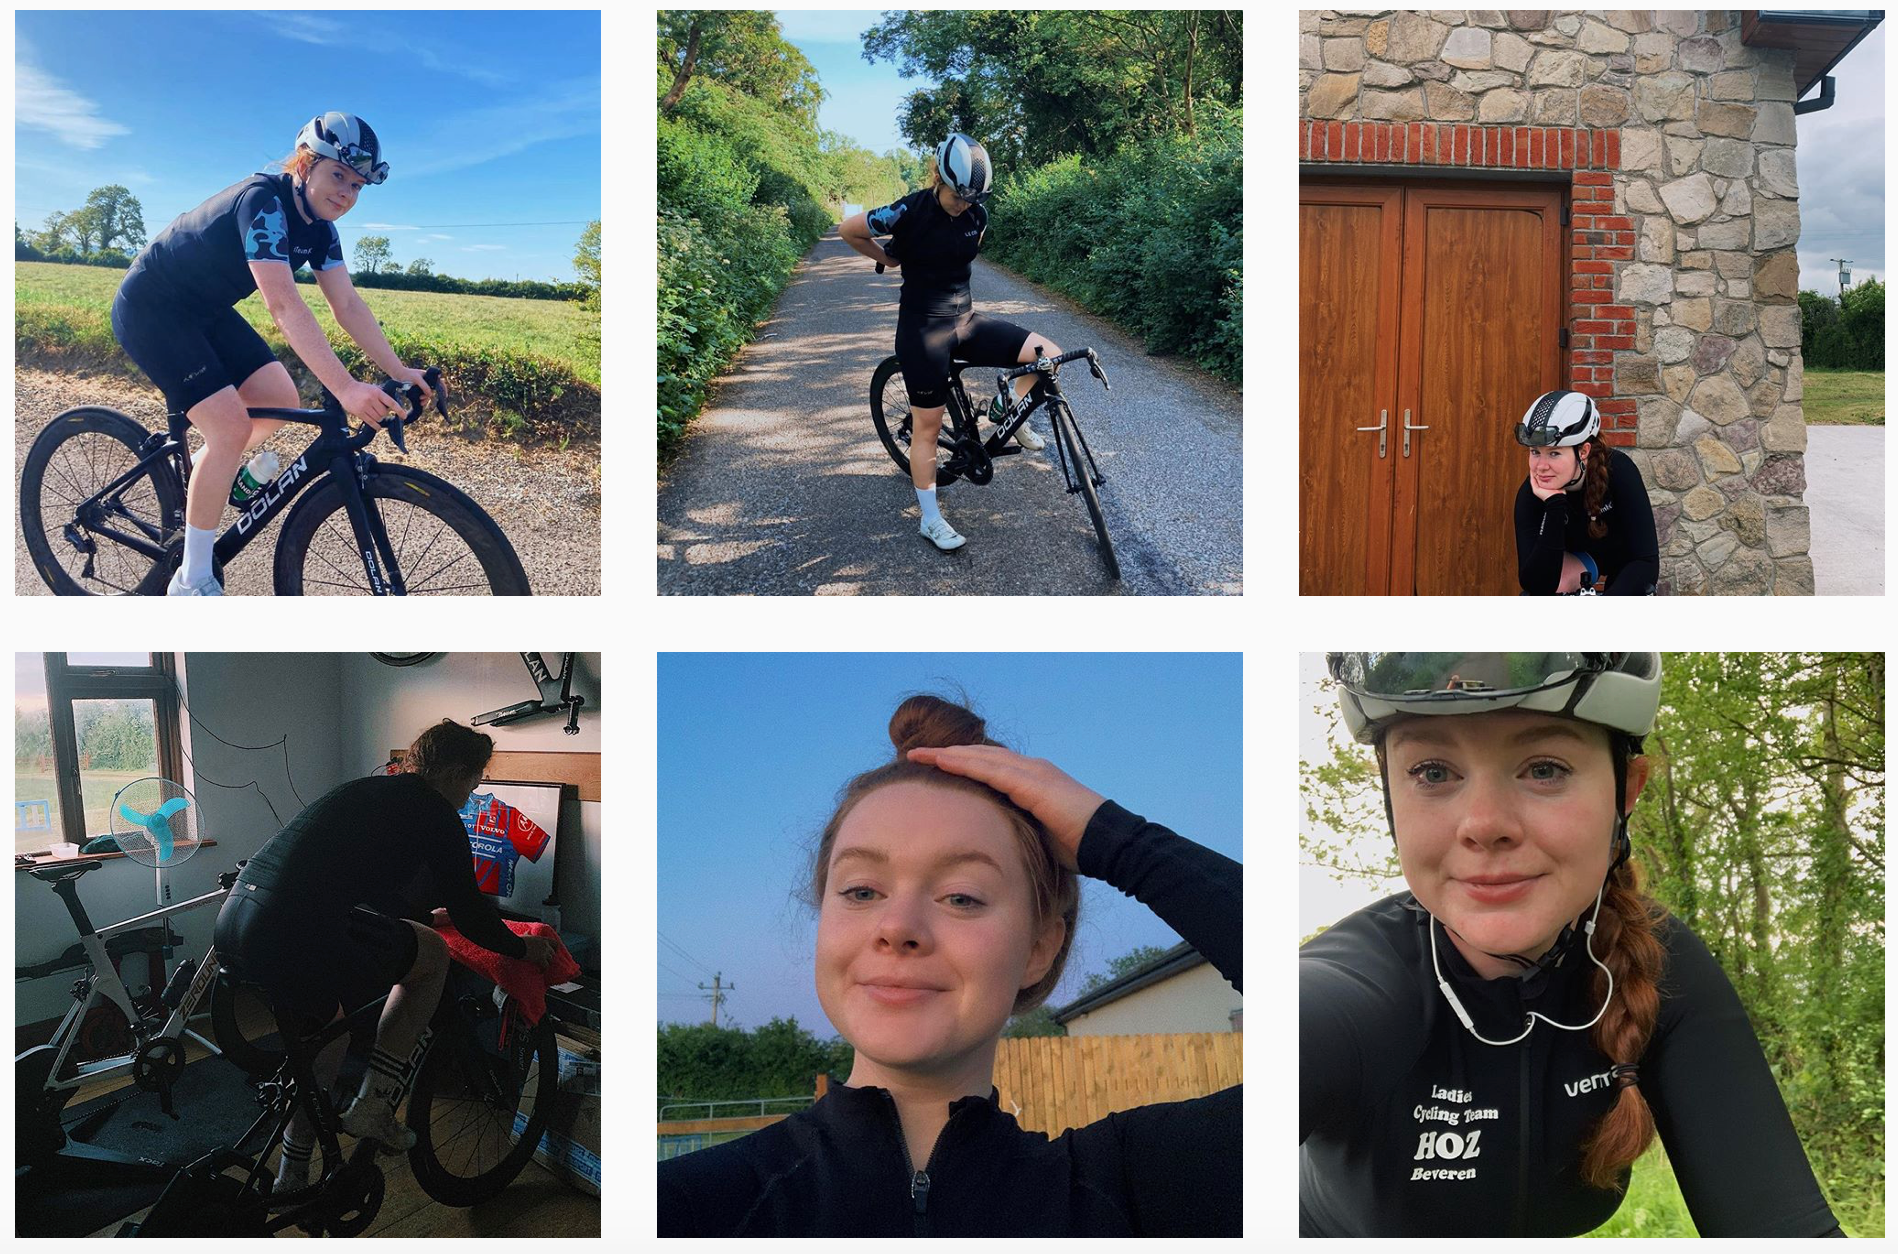 Extrait du profil Instagram de la cycliste femme Sophie Collins